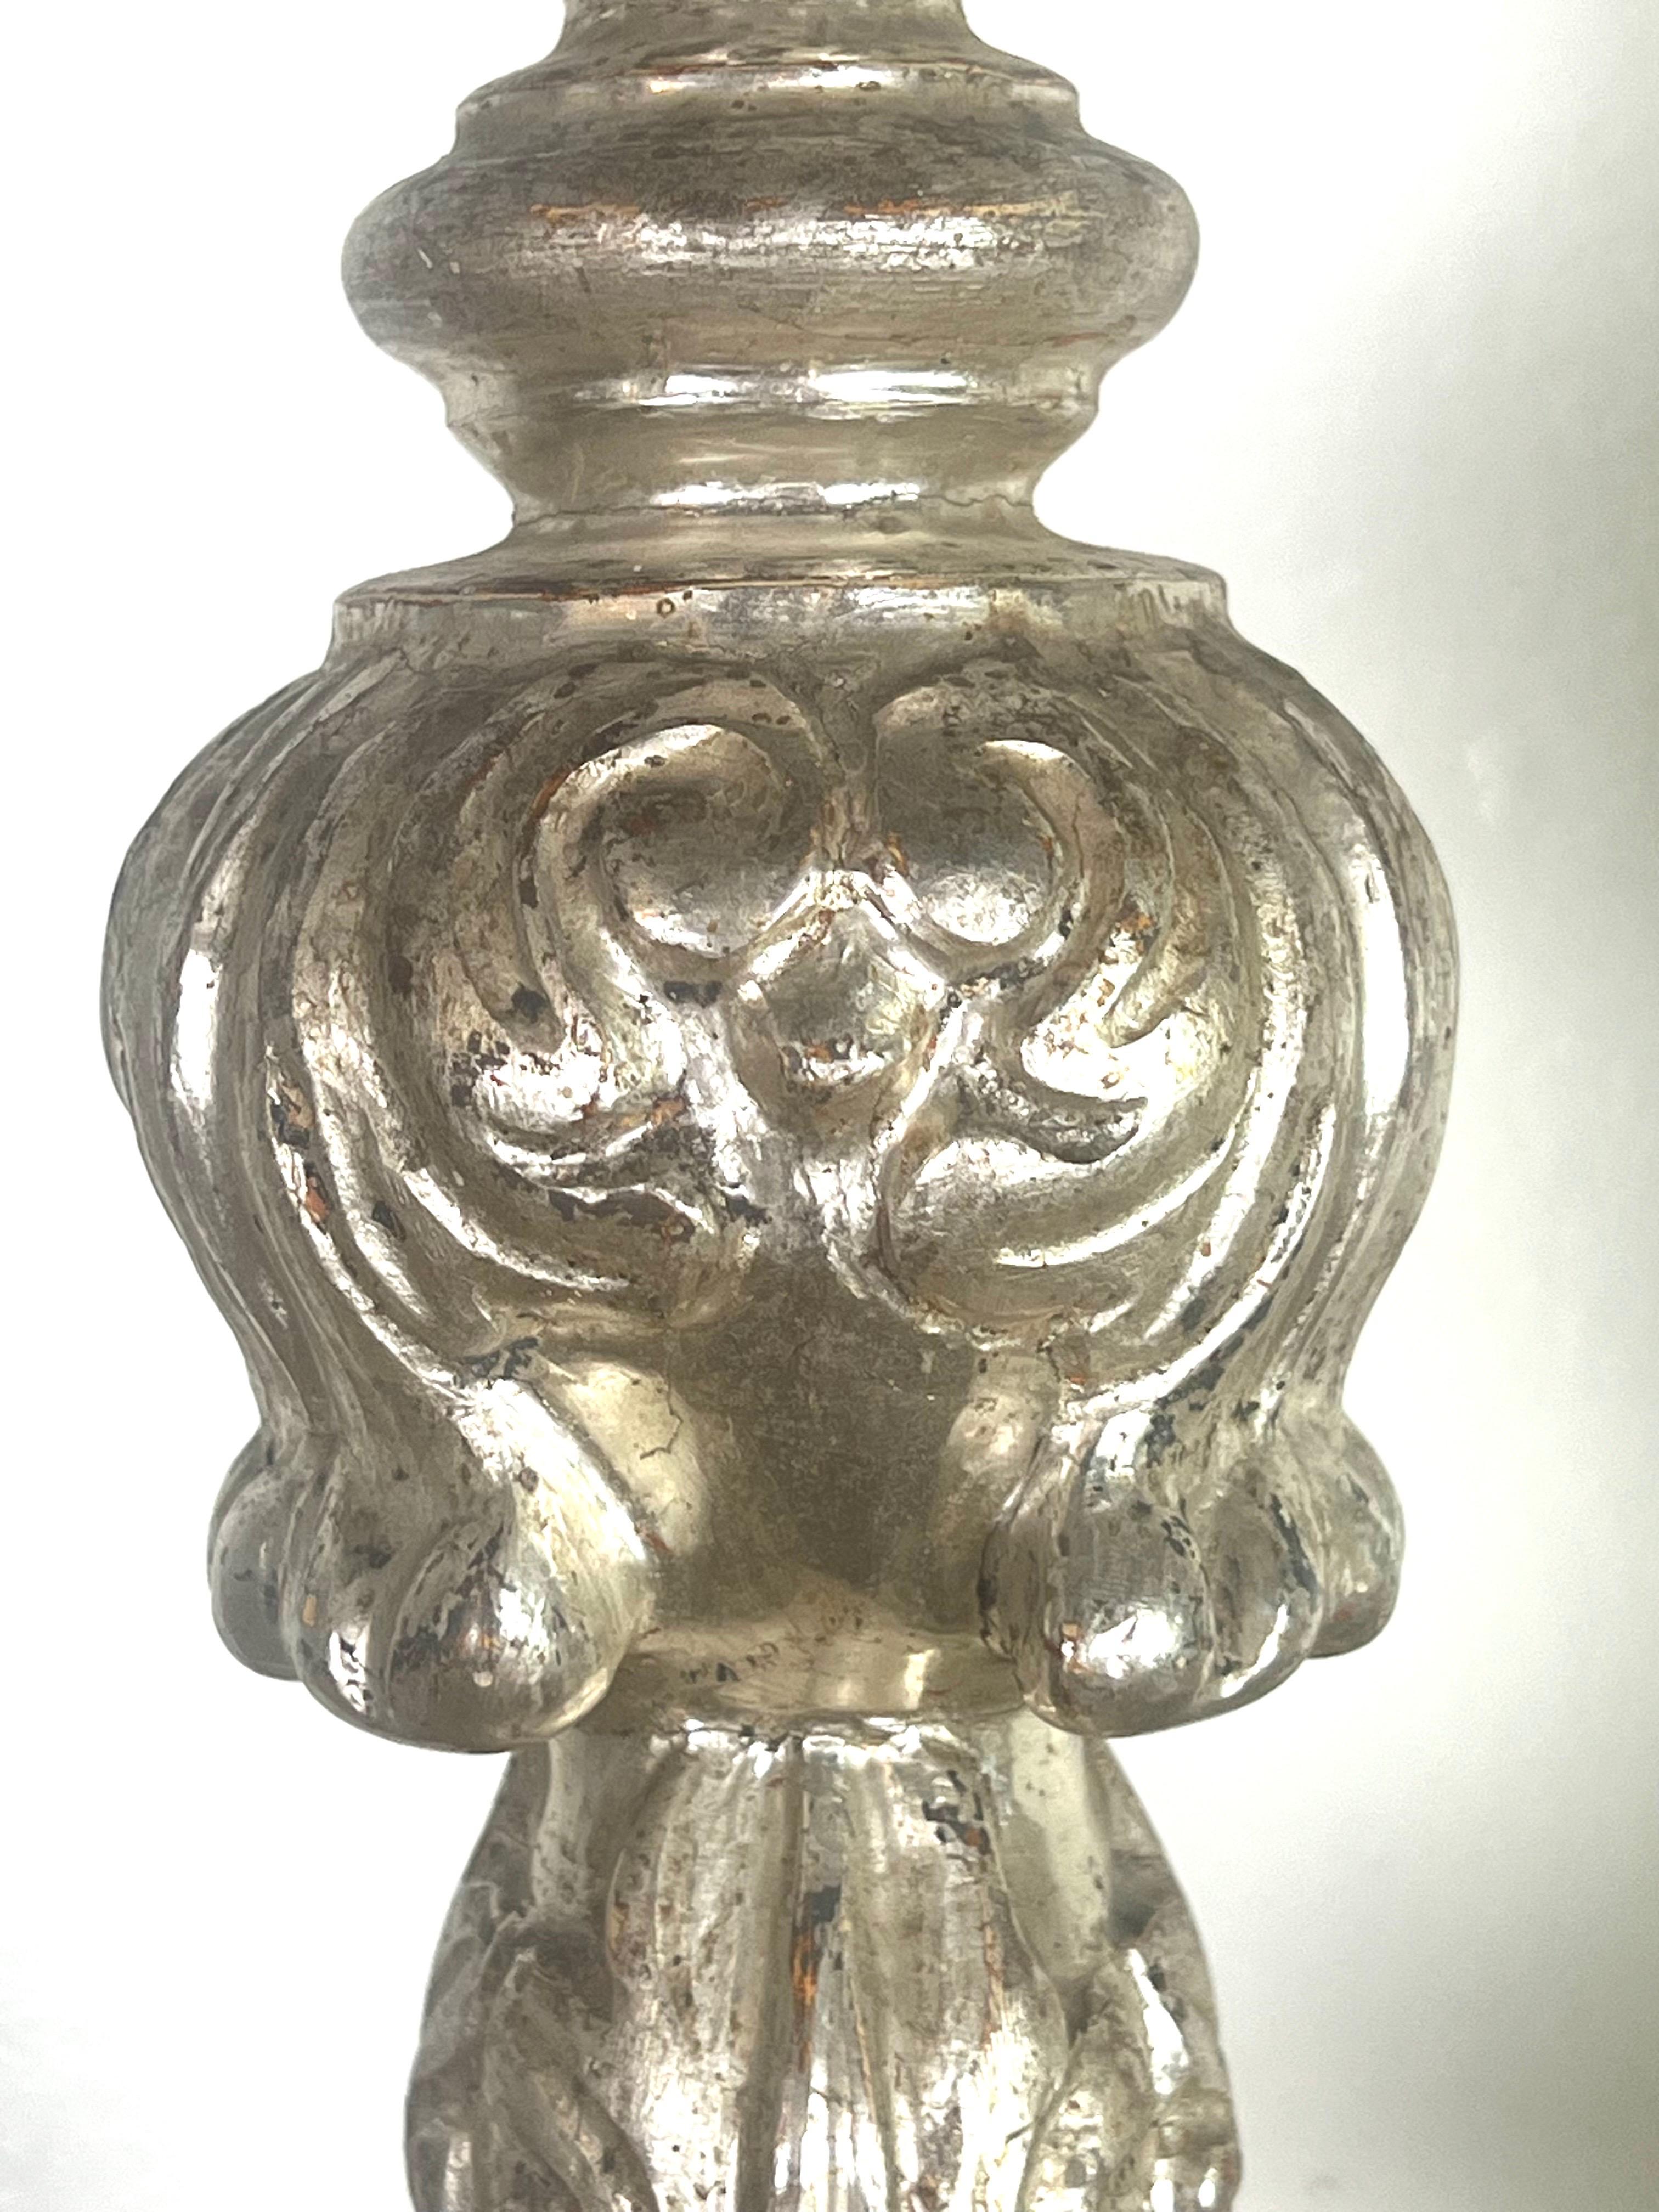 Paire de chandeliers en bois argenté et doré du 19e siècle reposant sur une base tripode.  Les chandeliers sont ornés de bobèches en fer forgé et de prickets en métal.